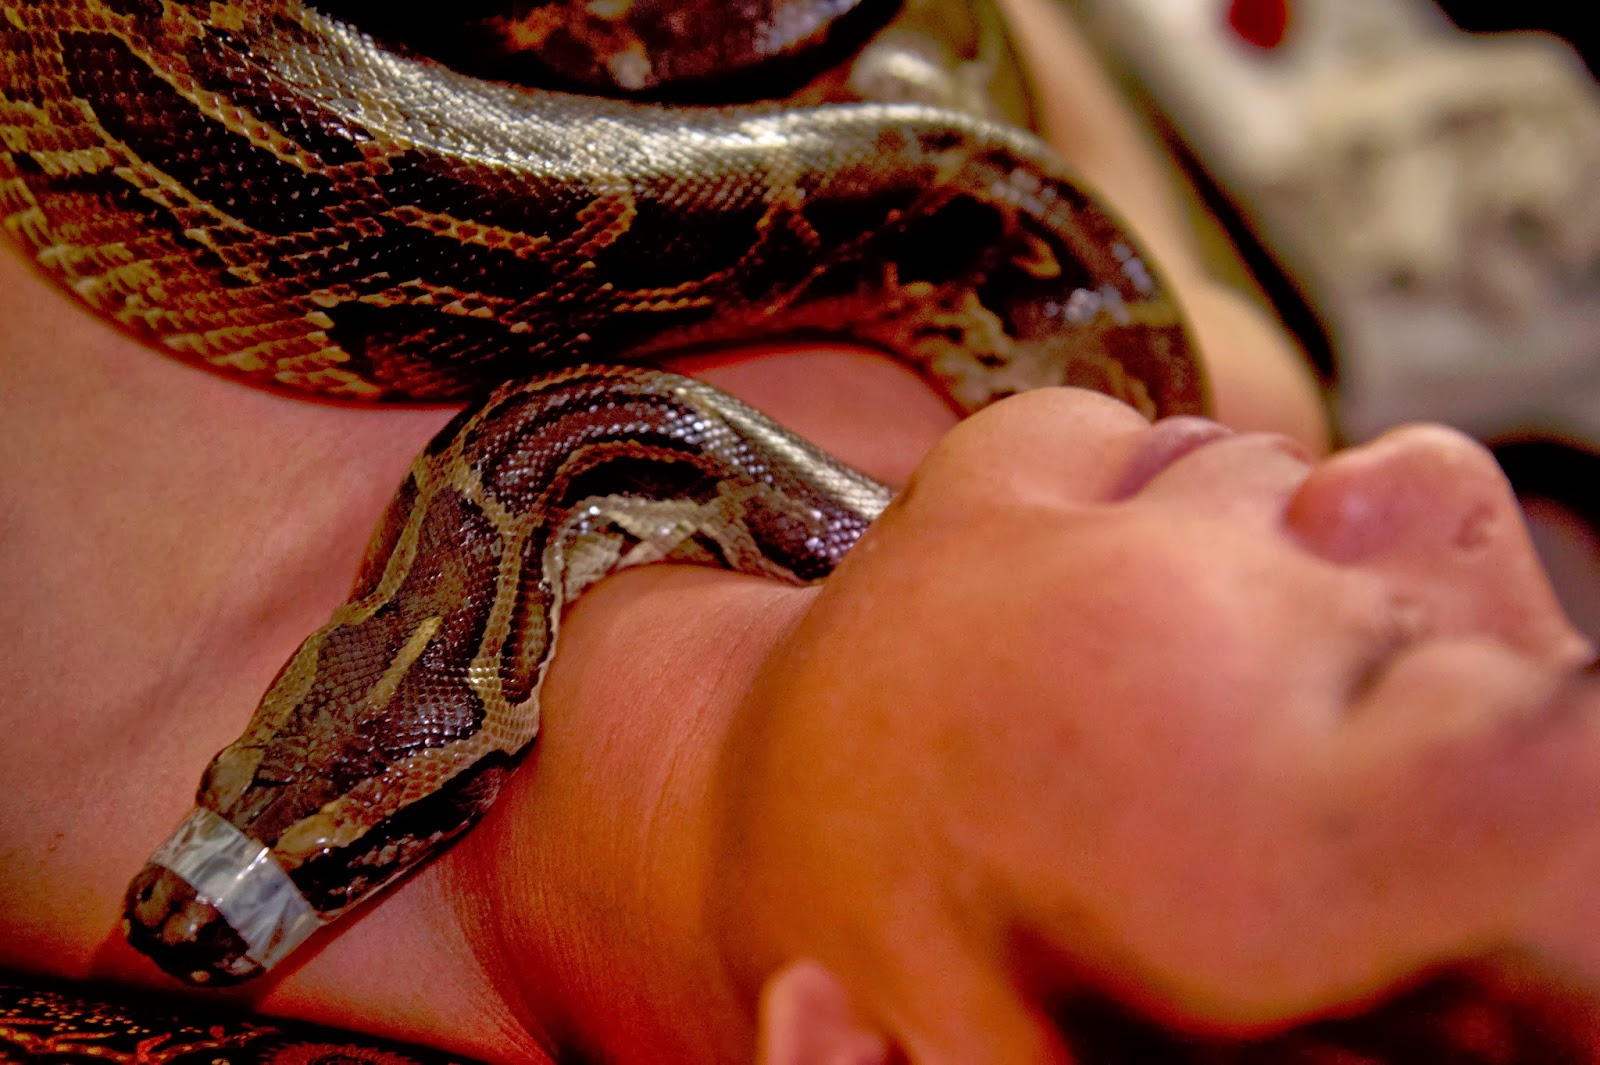 Женщина анаконда. Девушка целует змею. Поцелуй со змеей.